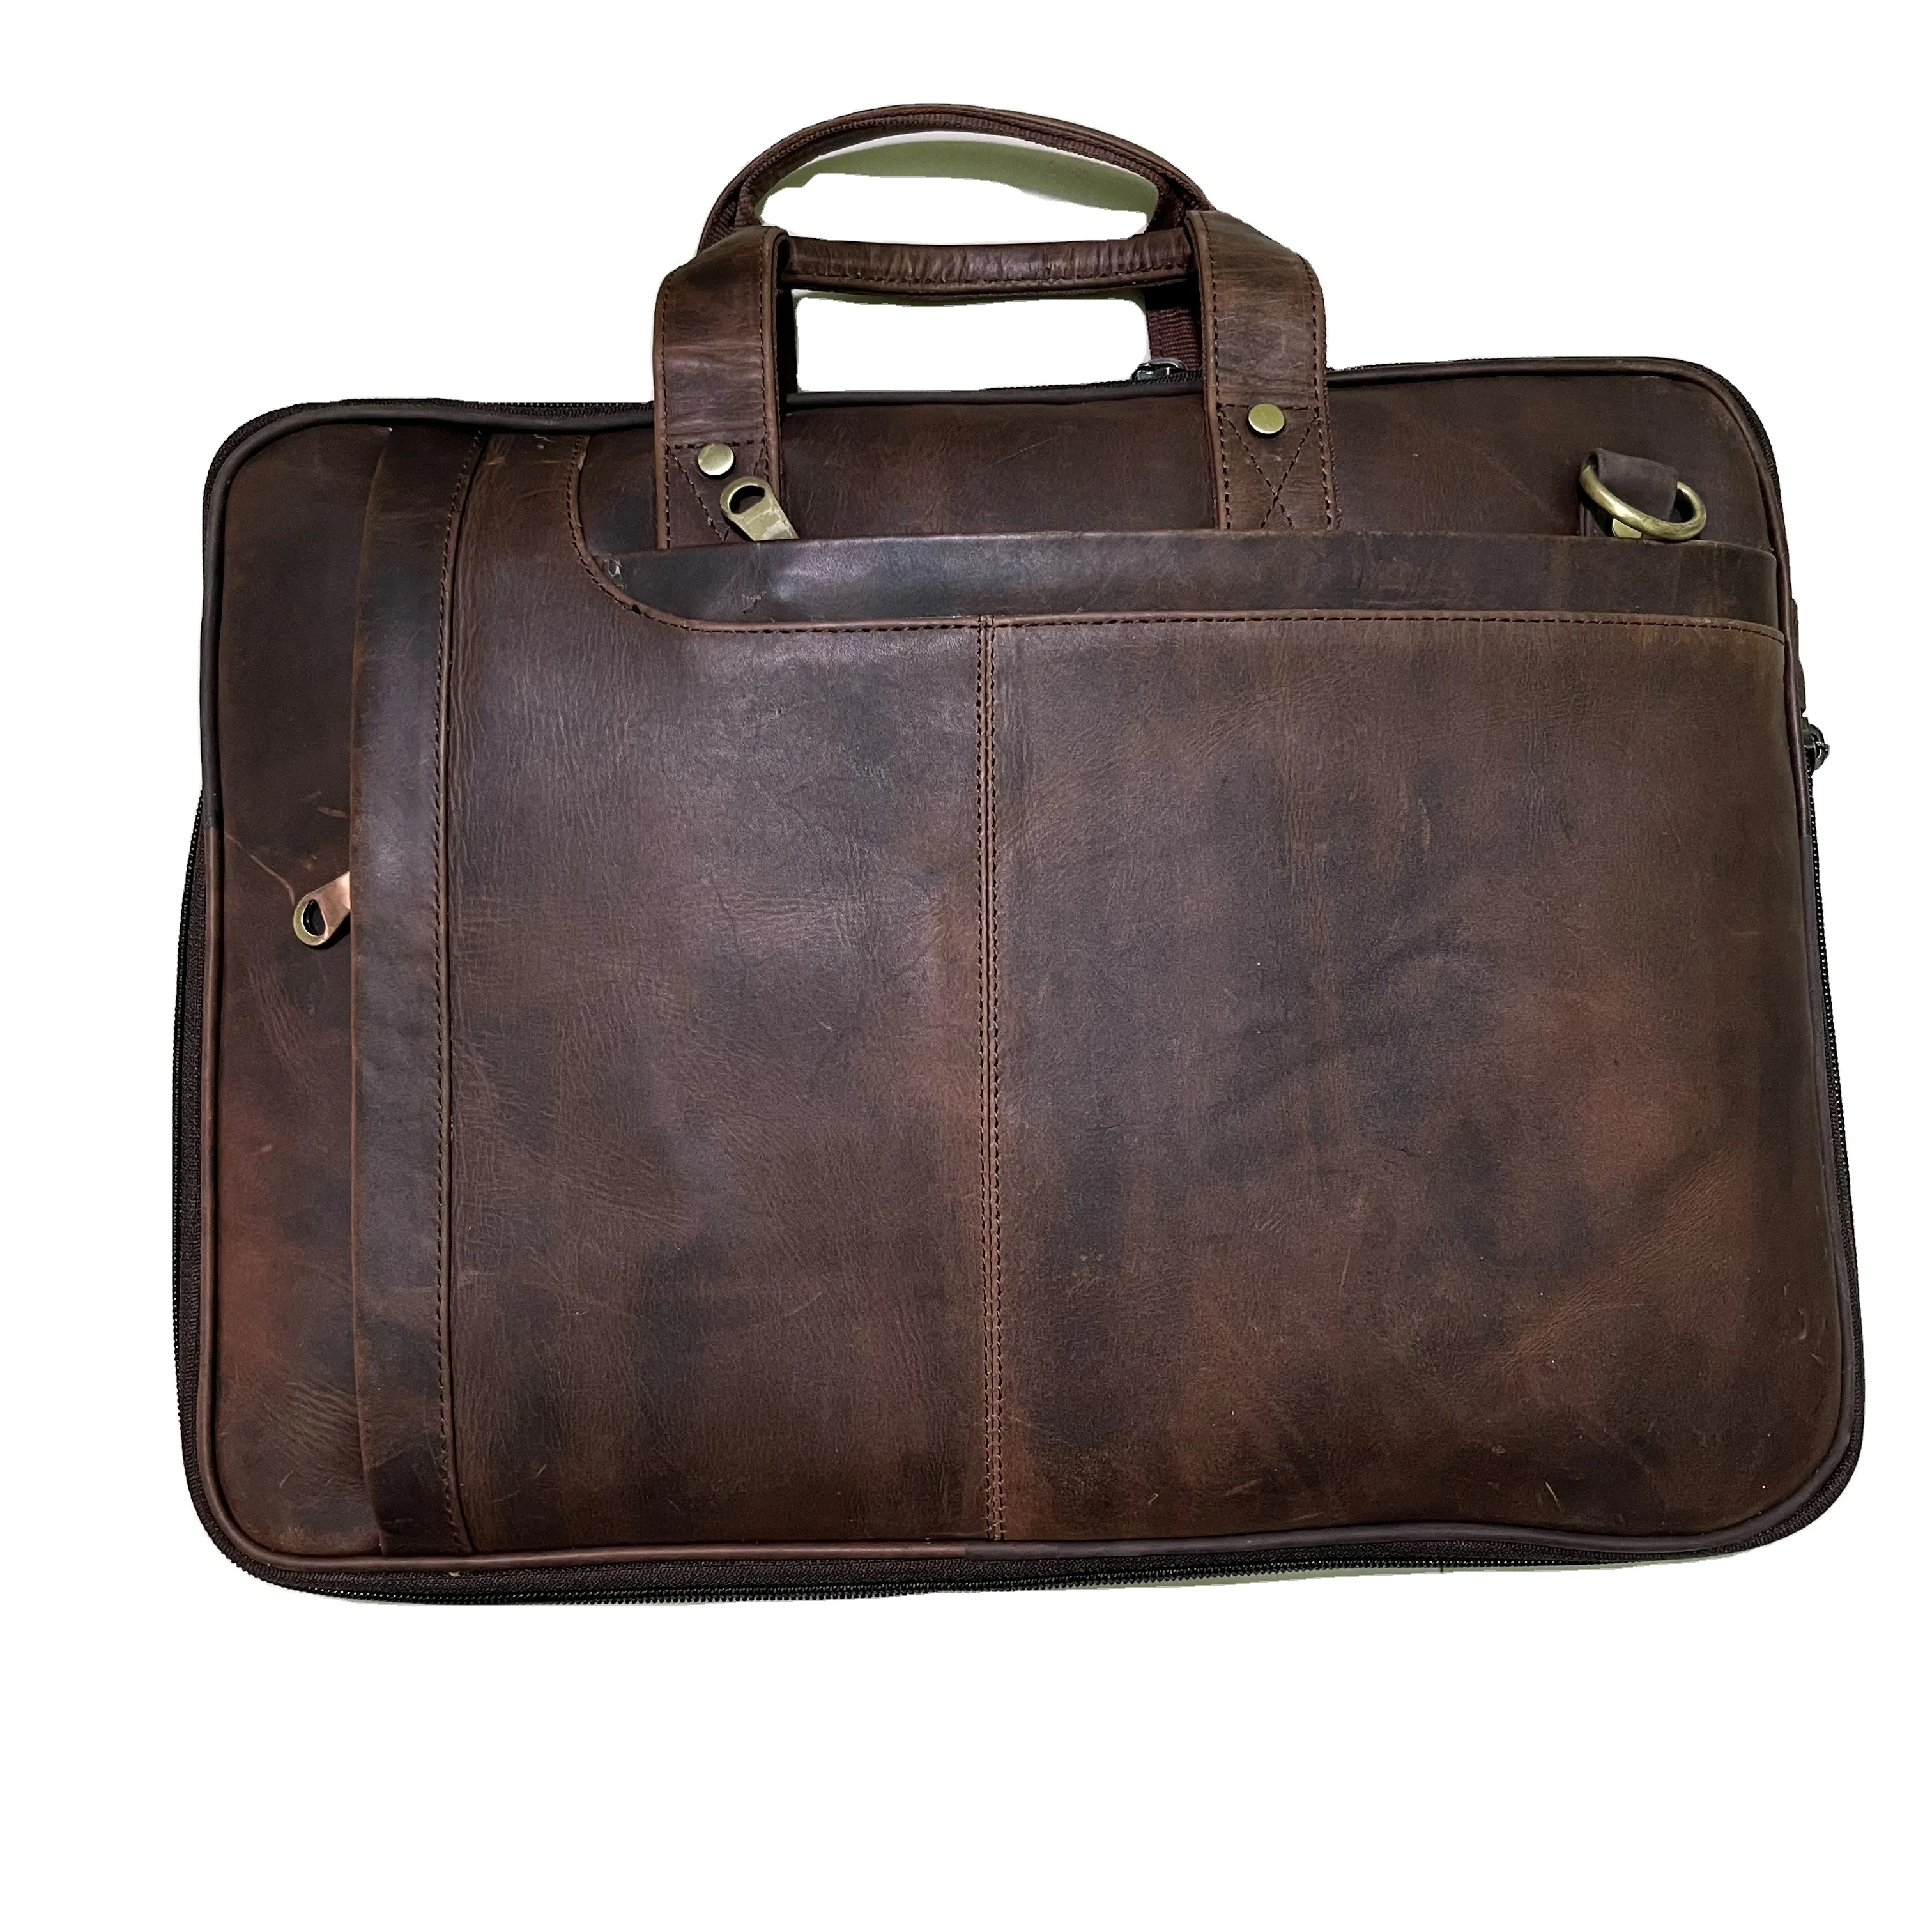 Real Handmade Genuine Leather Briefcase Laptop Messenger Bag Laptop Case File Holder Office Use Bag